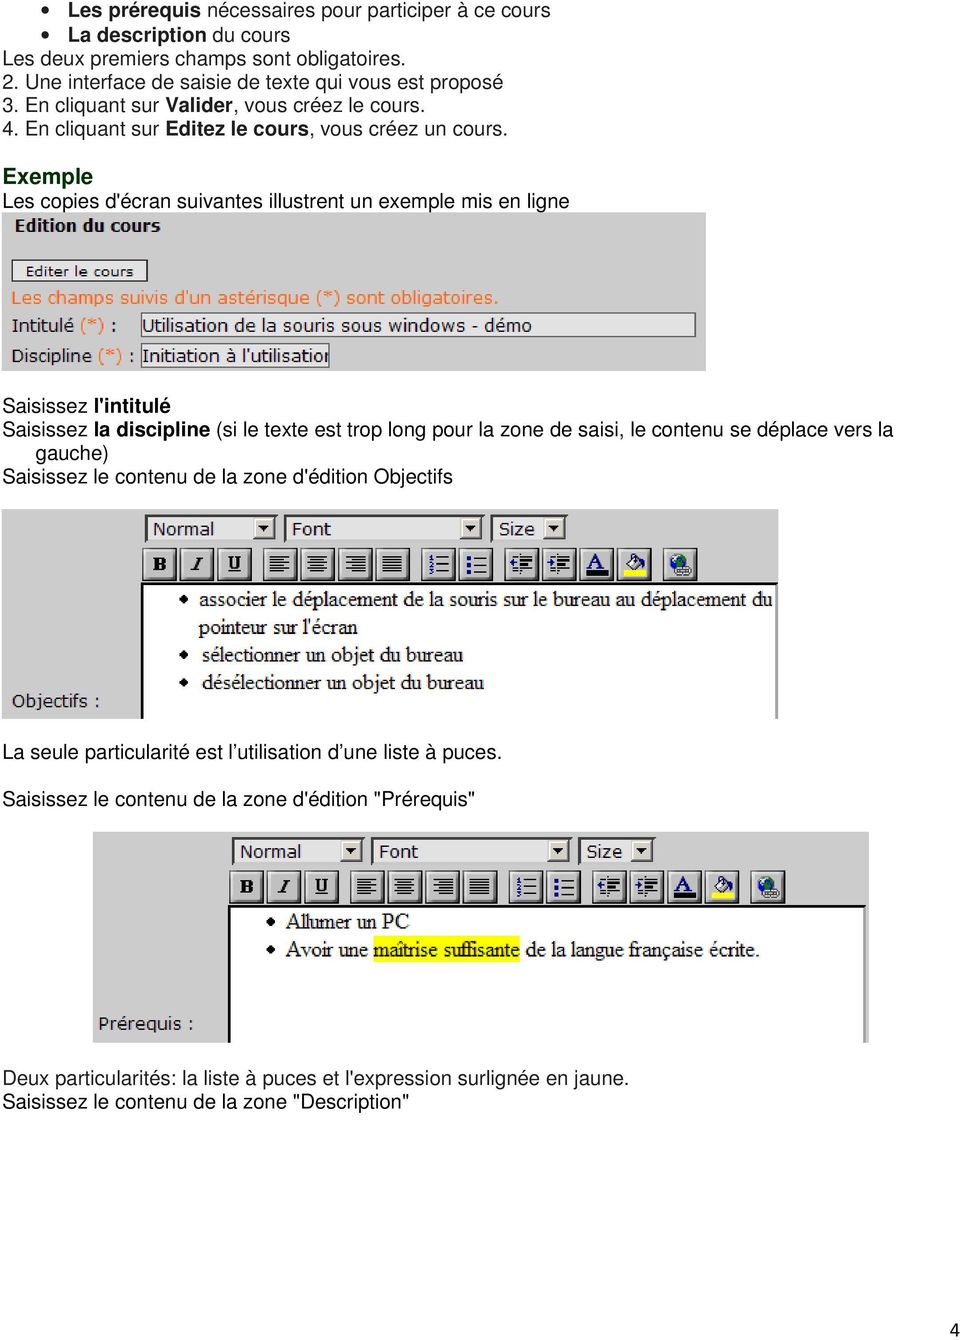 Exemple Les copies d'écran suivantes illustrent un exemple mis en ligne Saisissez l'intitulé Saisissez la discipline (si le texte est trop long pour la zone de saisi, le contenu se déplace vers